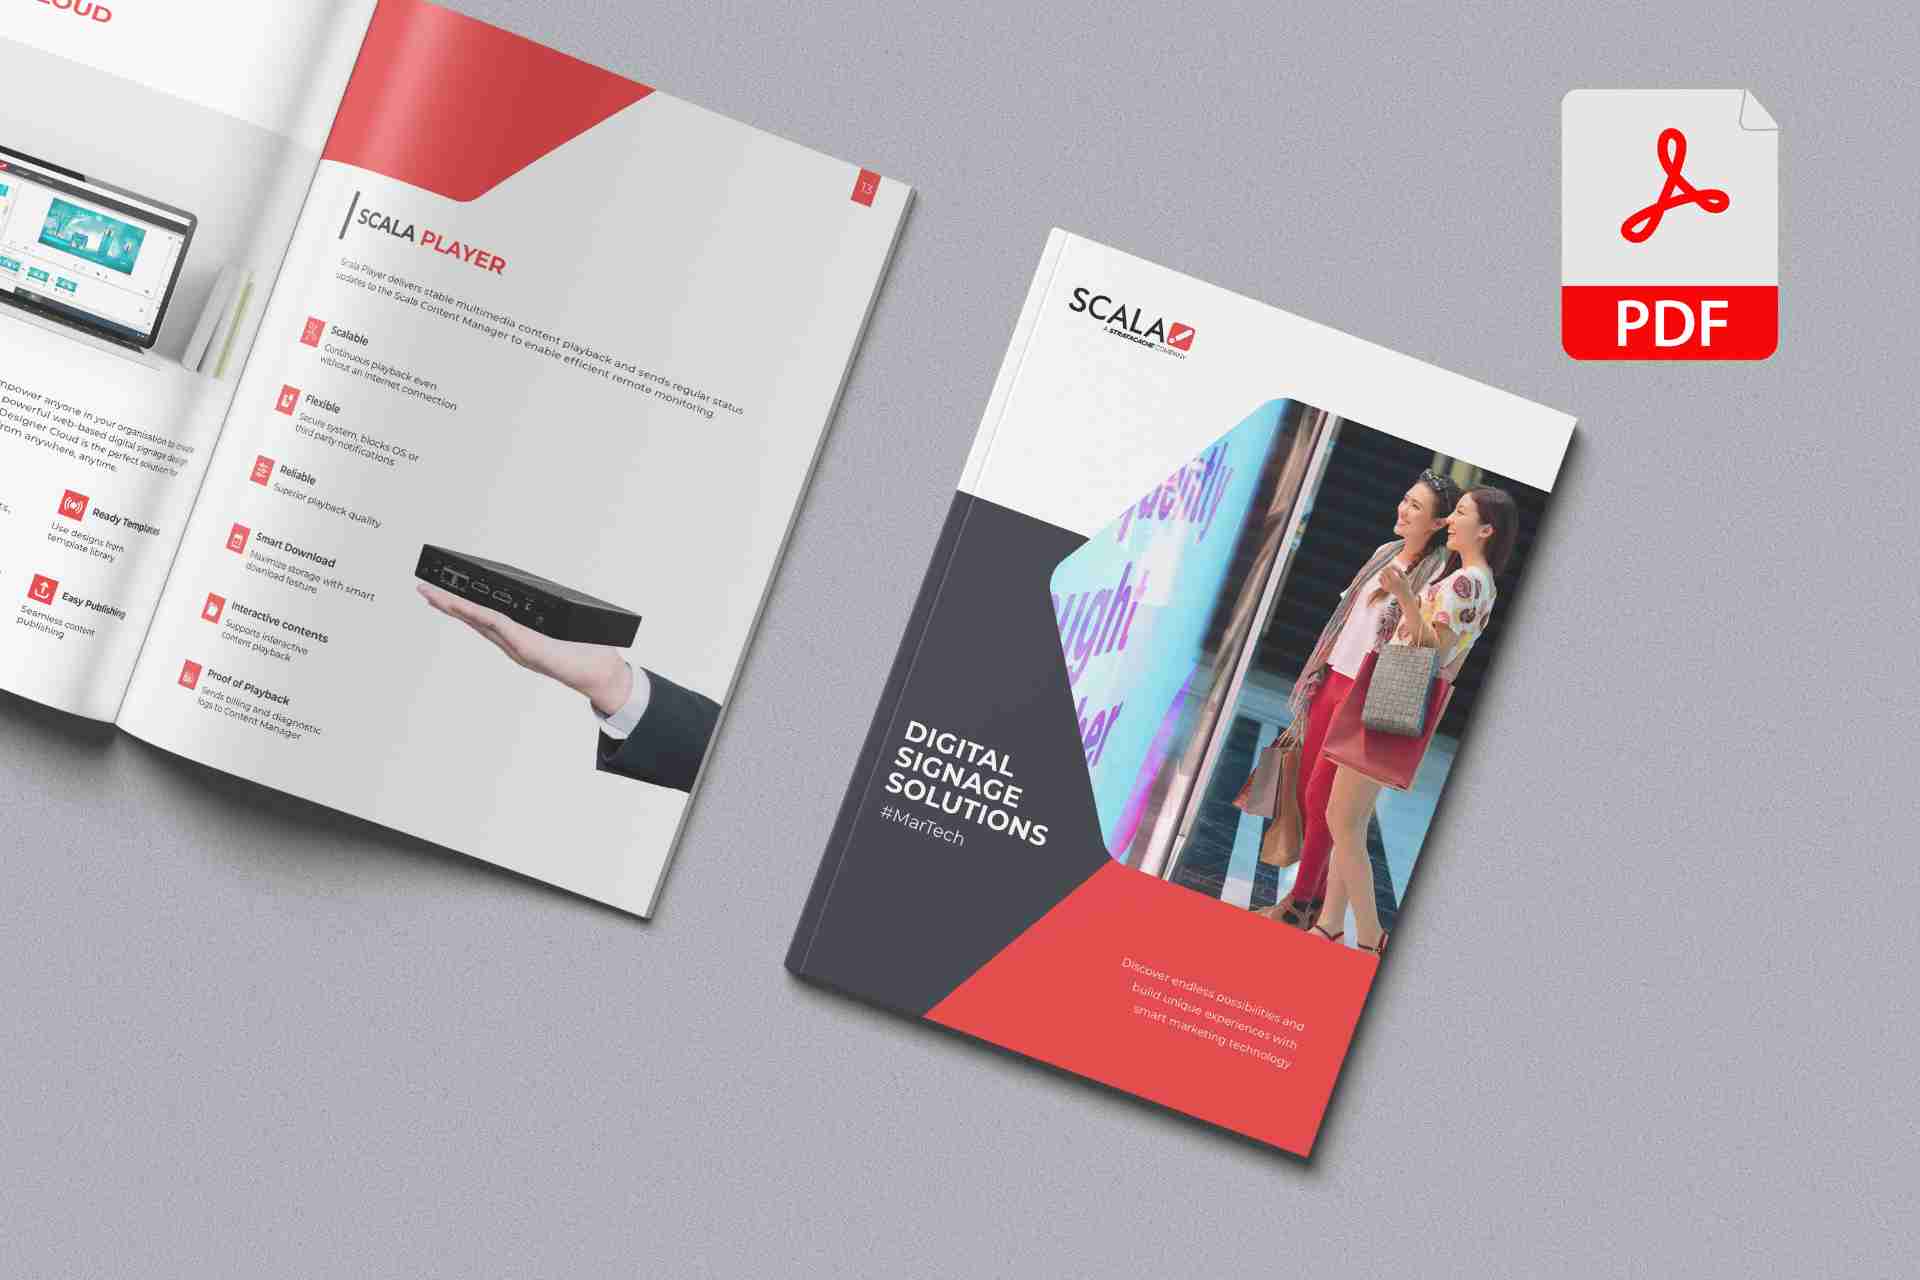 Download Brochures on Digital Signage Solutions